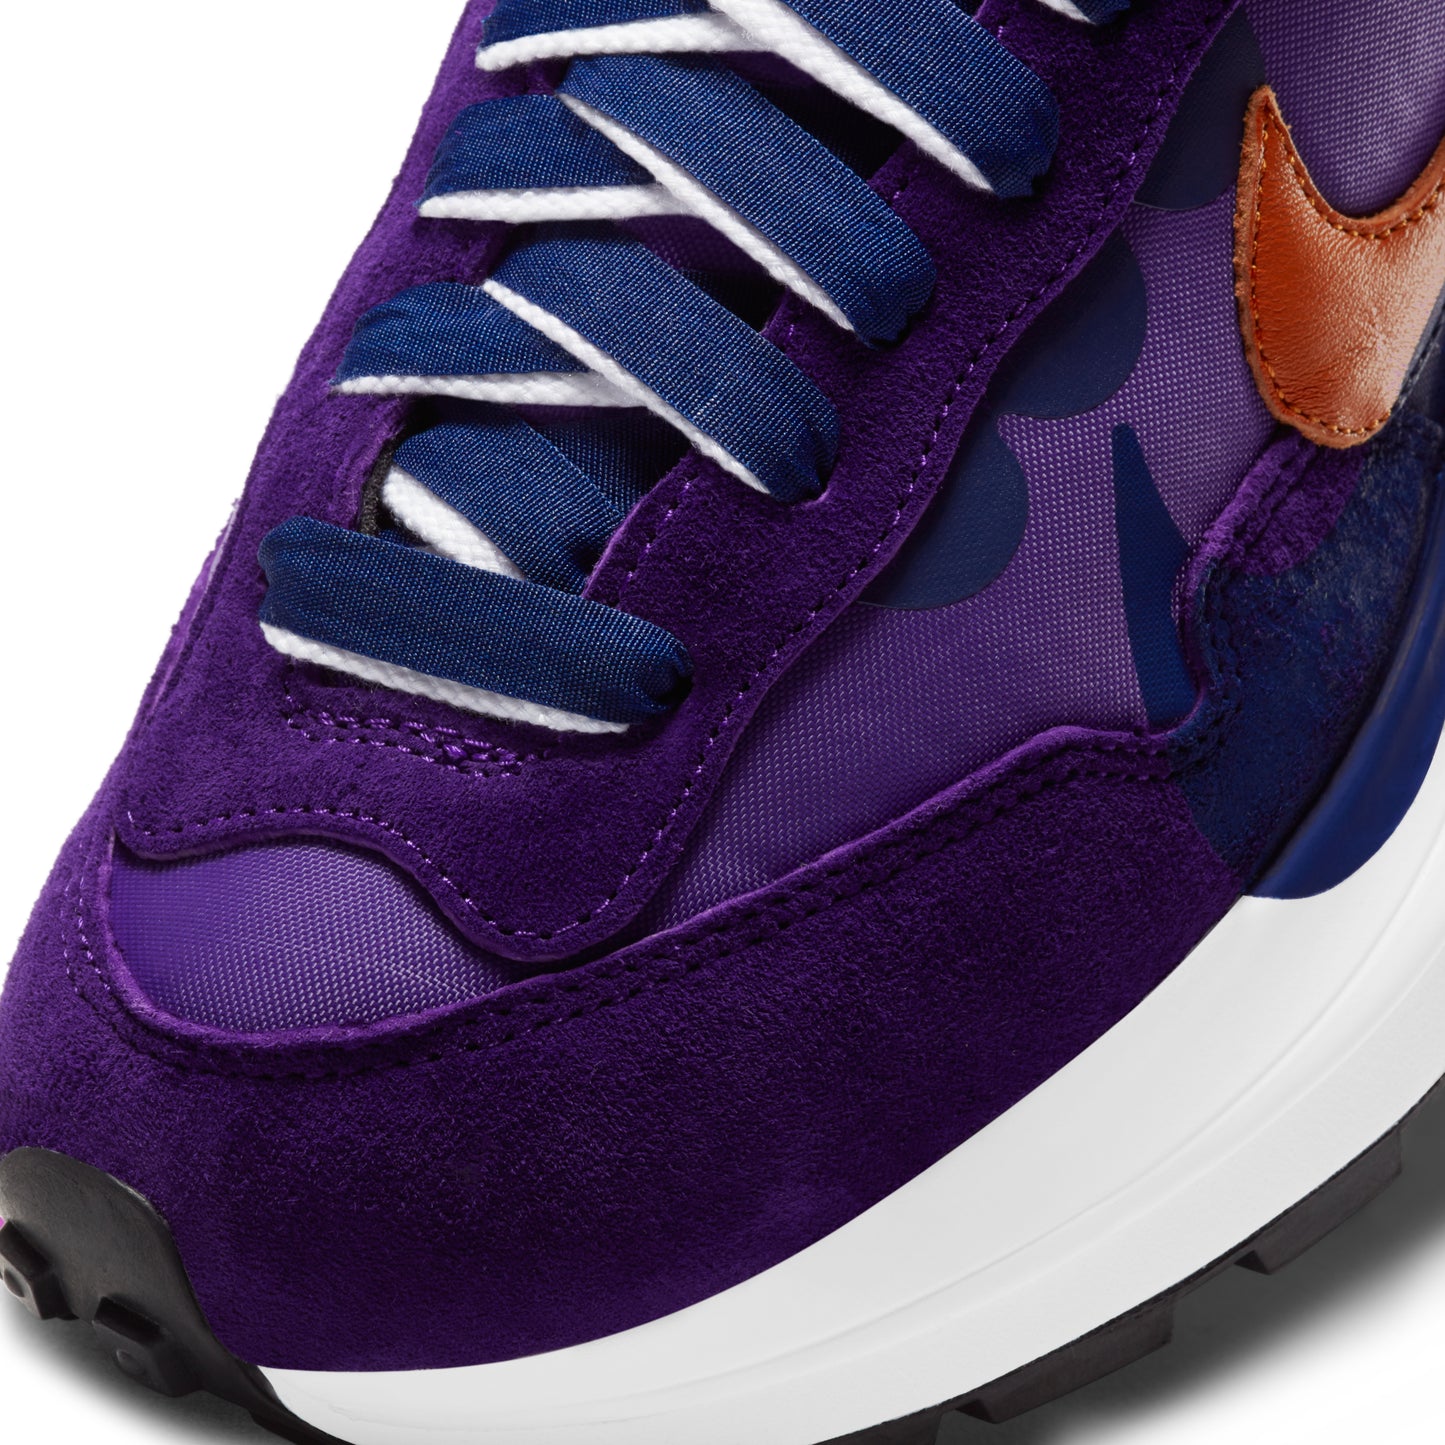 Nike x Sacai Vaporwaffle "Dark Iris"